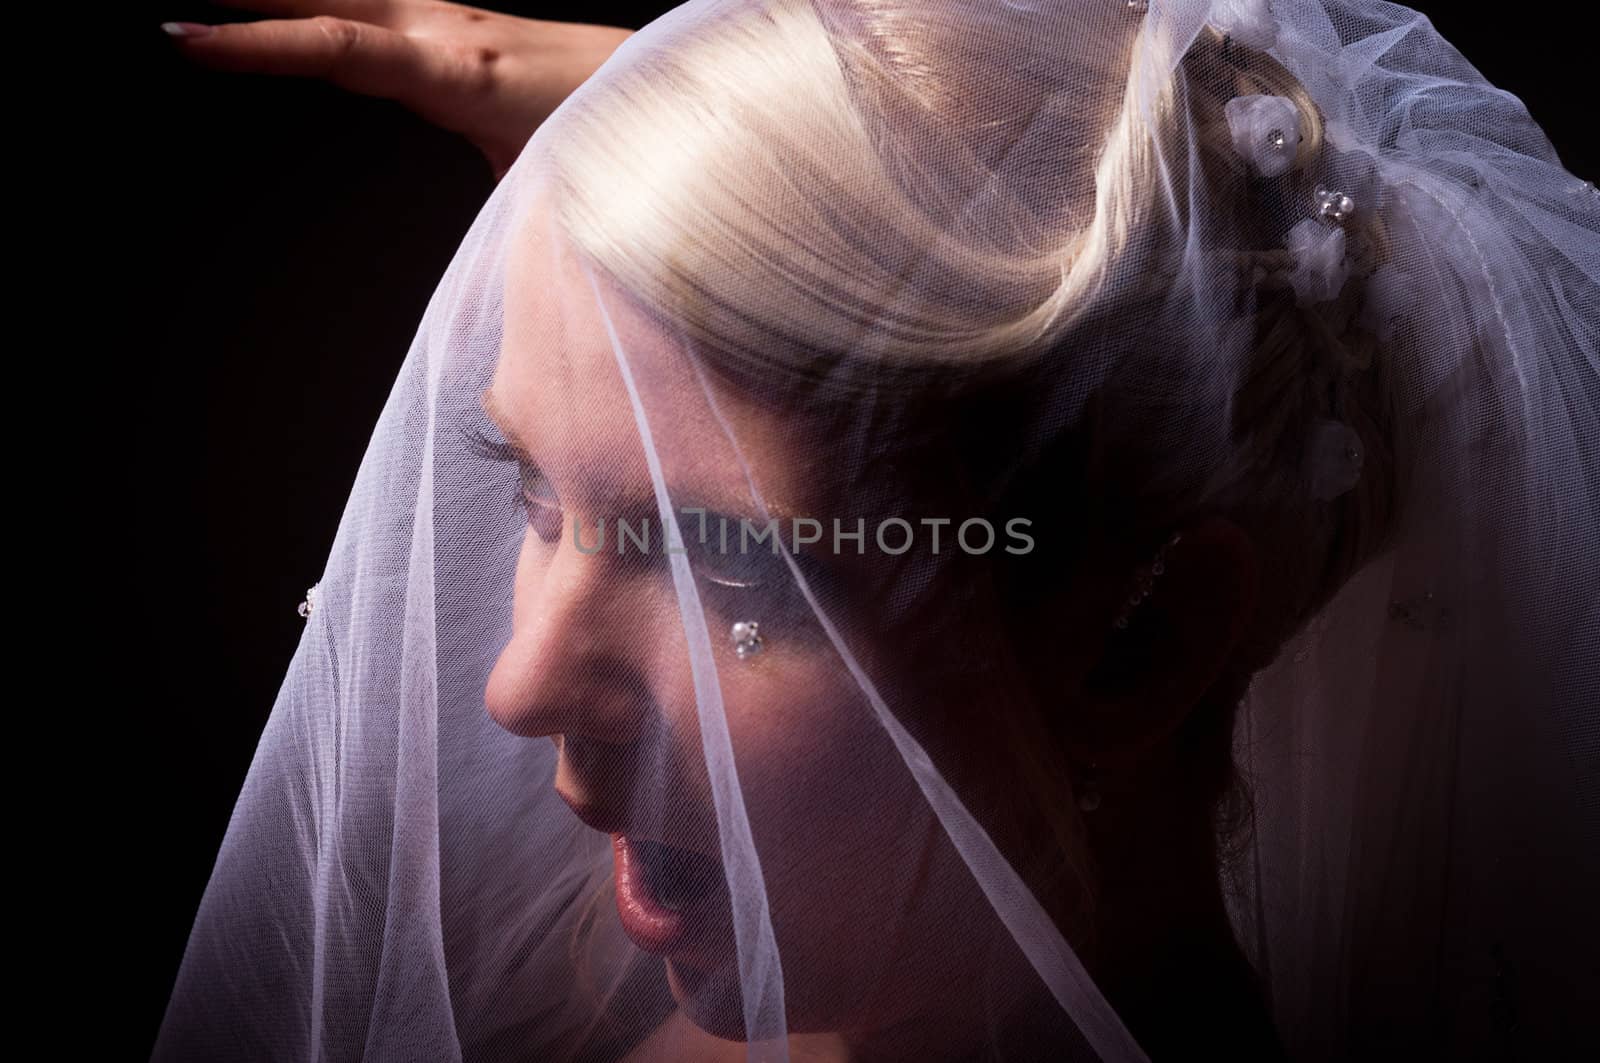 Surprised bride in veil